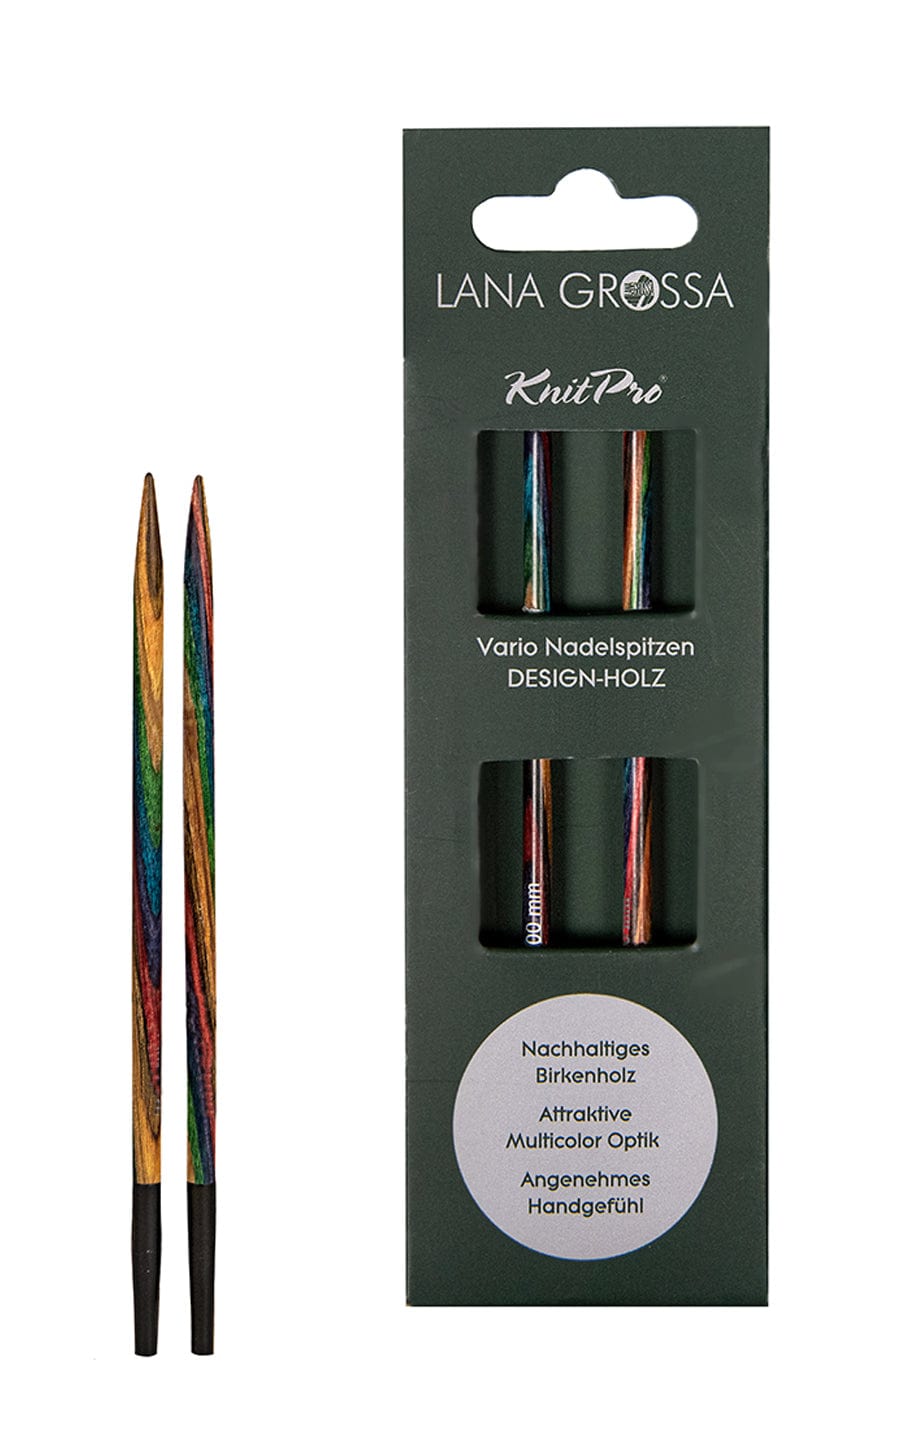 LANA GROSSA Nadeln Kurze 6,0 mm Nadelspitze Vario aus Holz - neue Verpackung